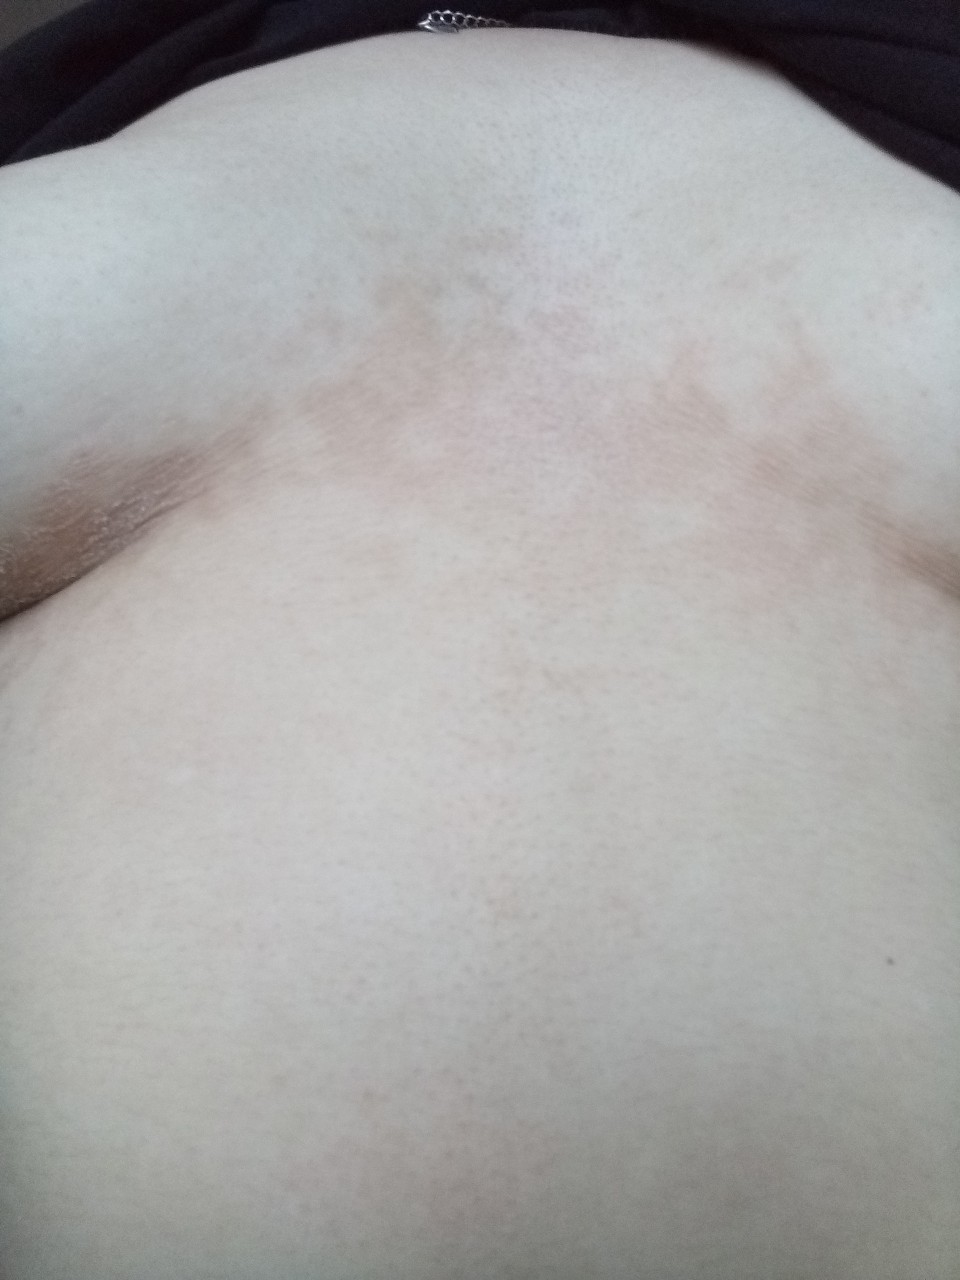 шелушится кожа на груди во время беременности фото 1